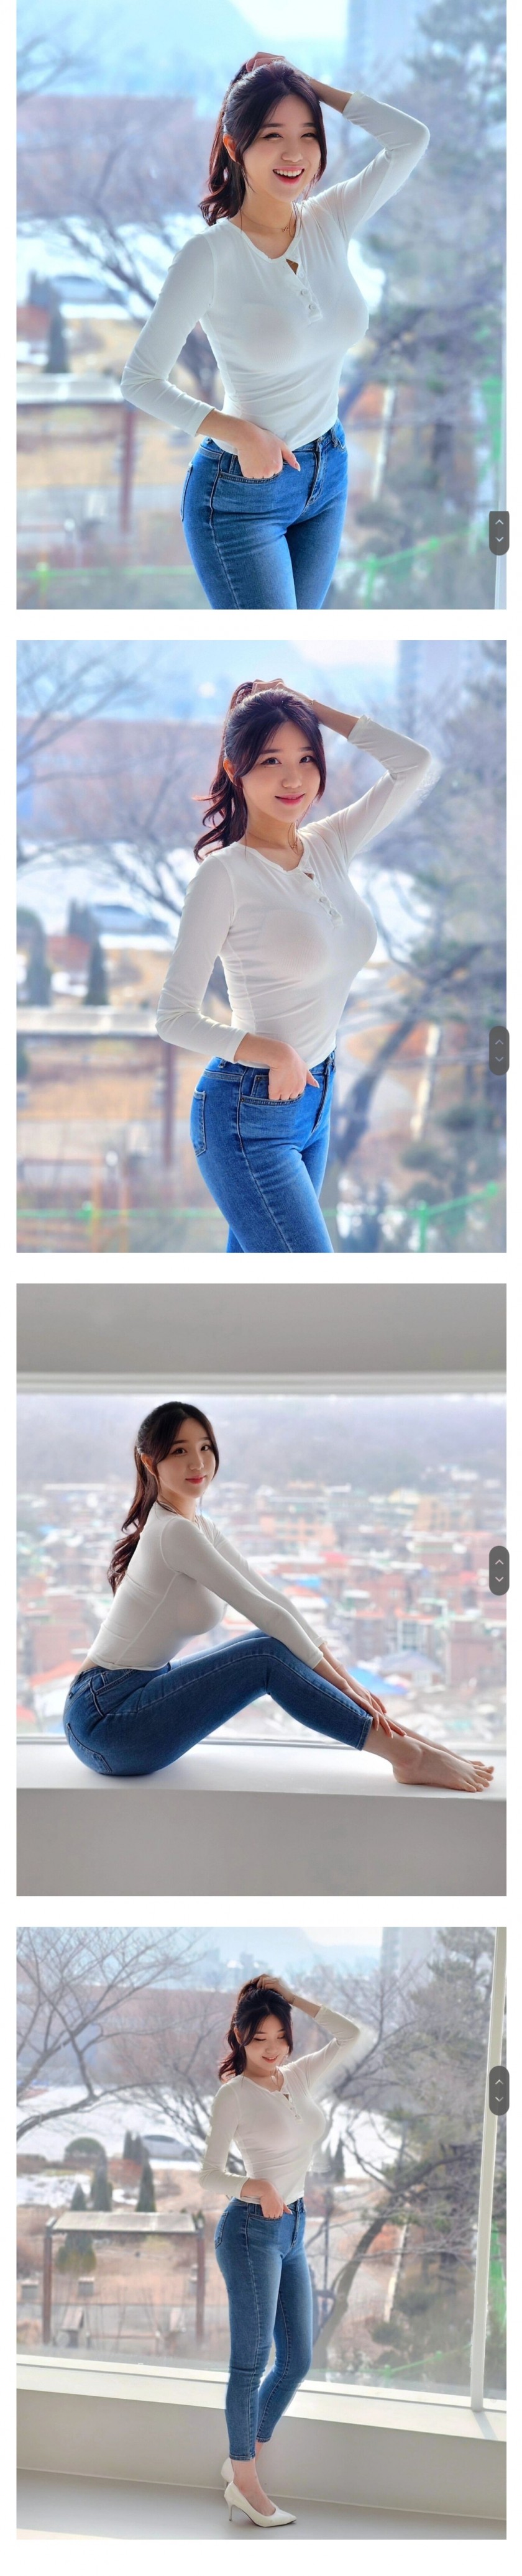 チアリーダー水原特例市キム·ヒョンヨンチアリーダーインスタ白いジーンズファッション